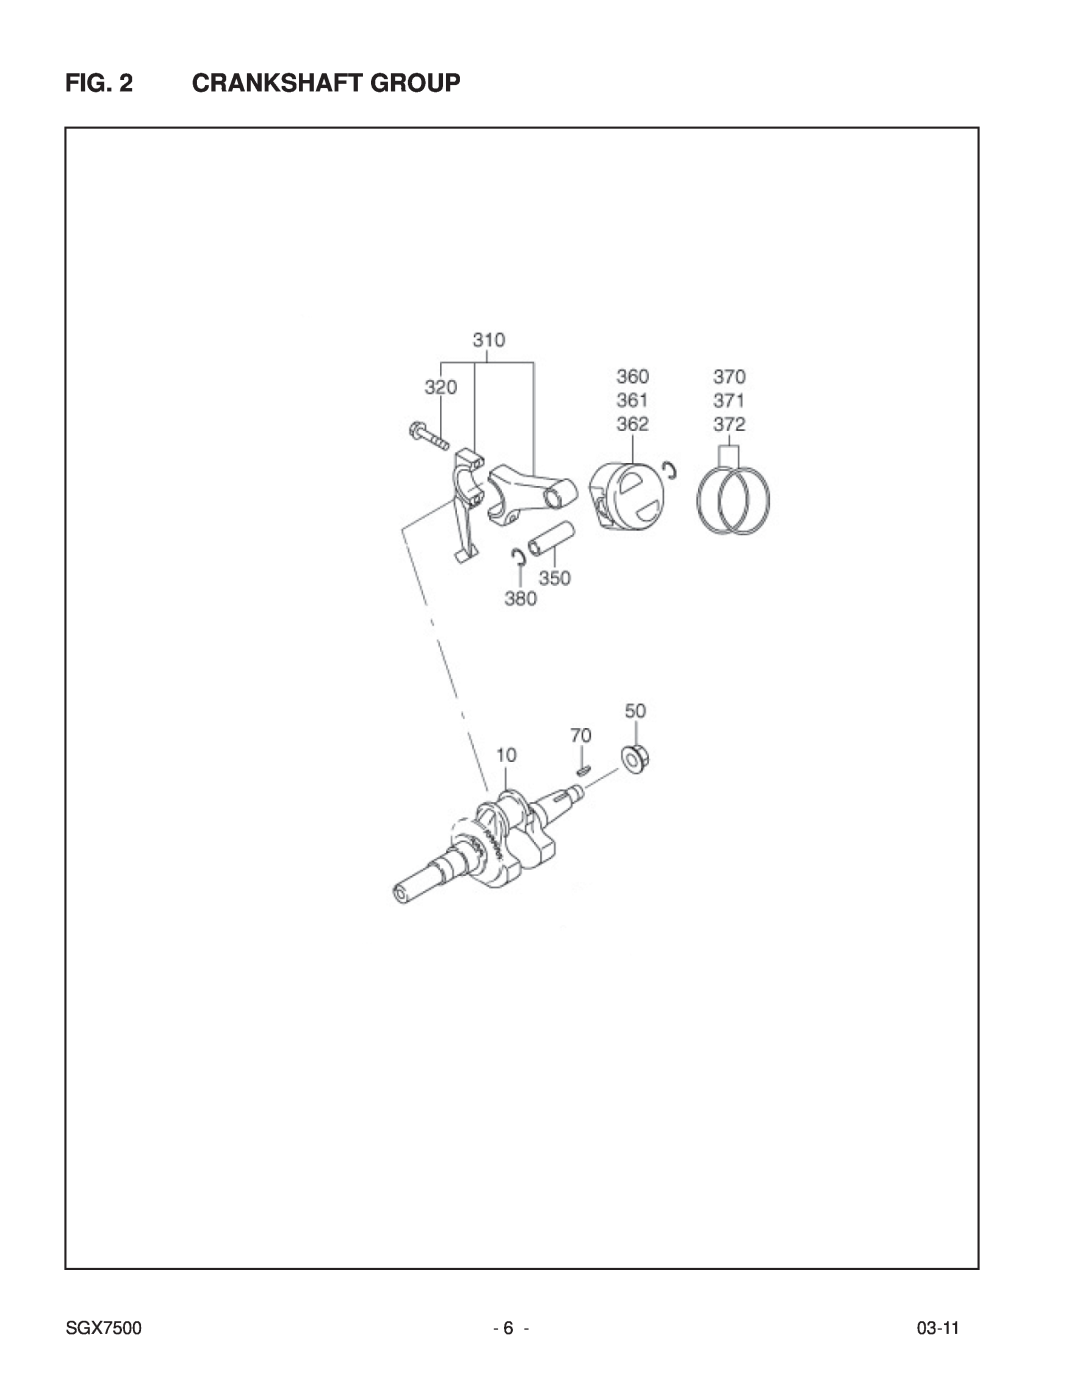 Subaru SGX7500 manual Crankshaft Group, 03-11 